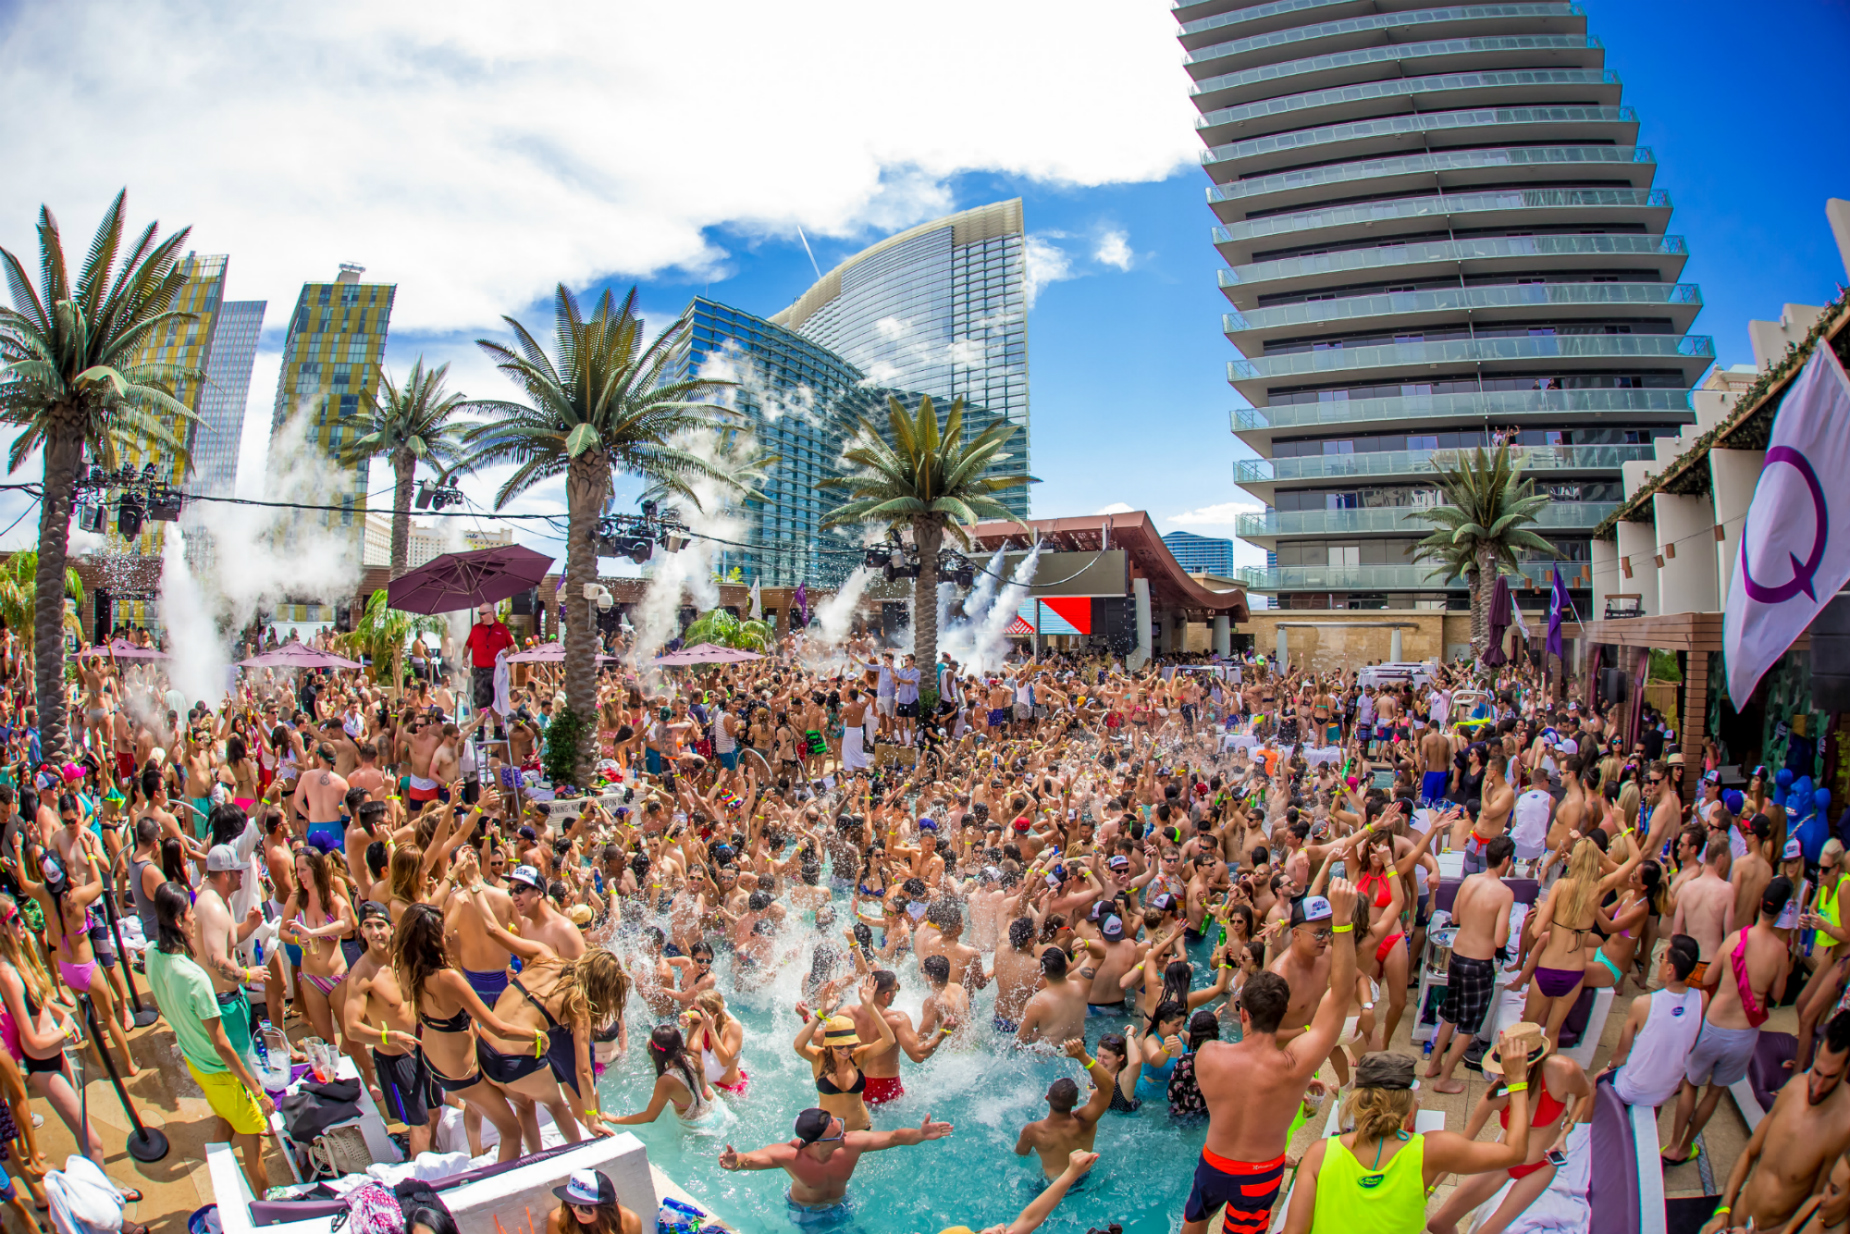 Top 7 Best Pool Parties in Las Vegas